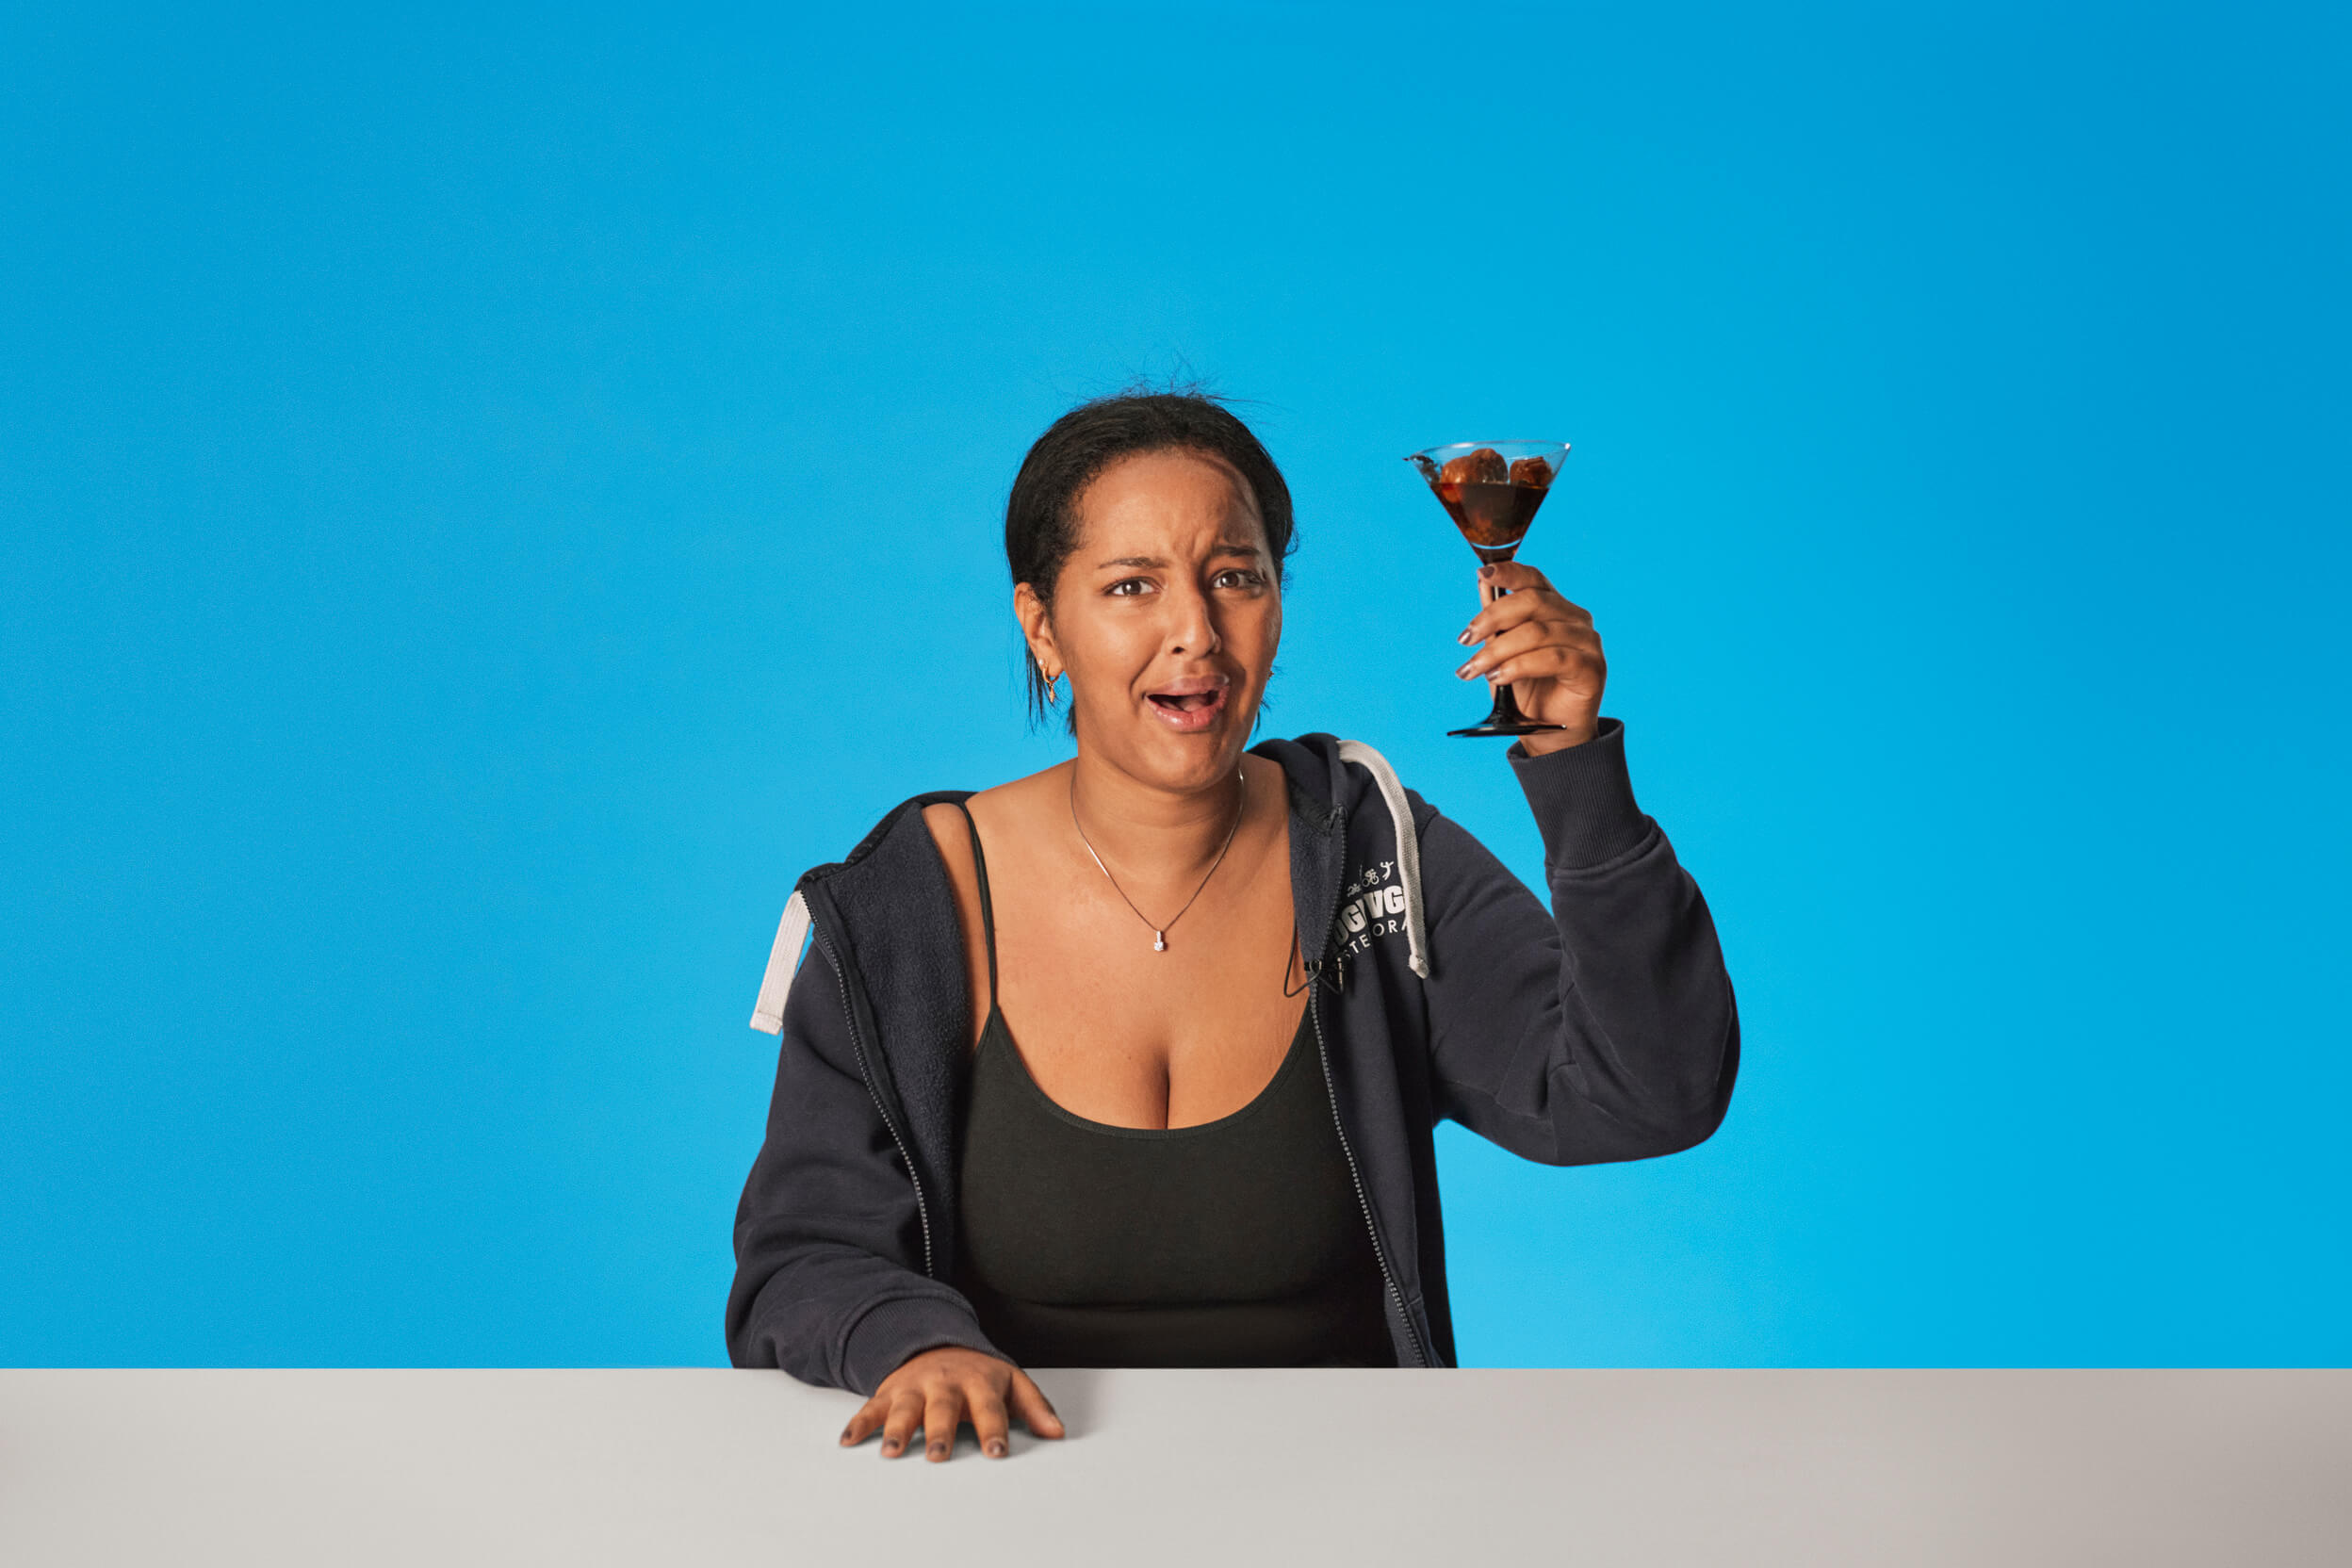 Ung kvinne sitter ved bord med blå bakgrunn. Hun holder en drink med ubestemmelig innhold og hun skjærer en grimase med ansiktet.